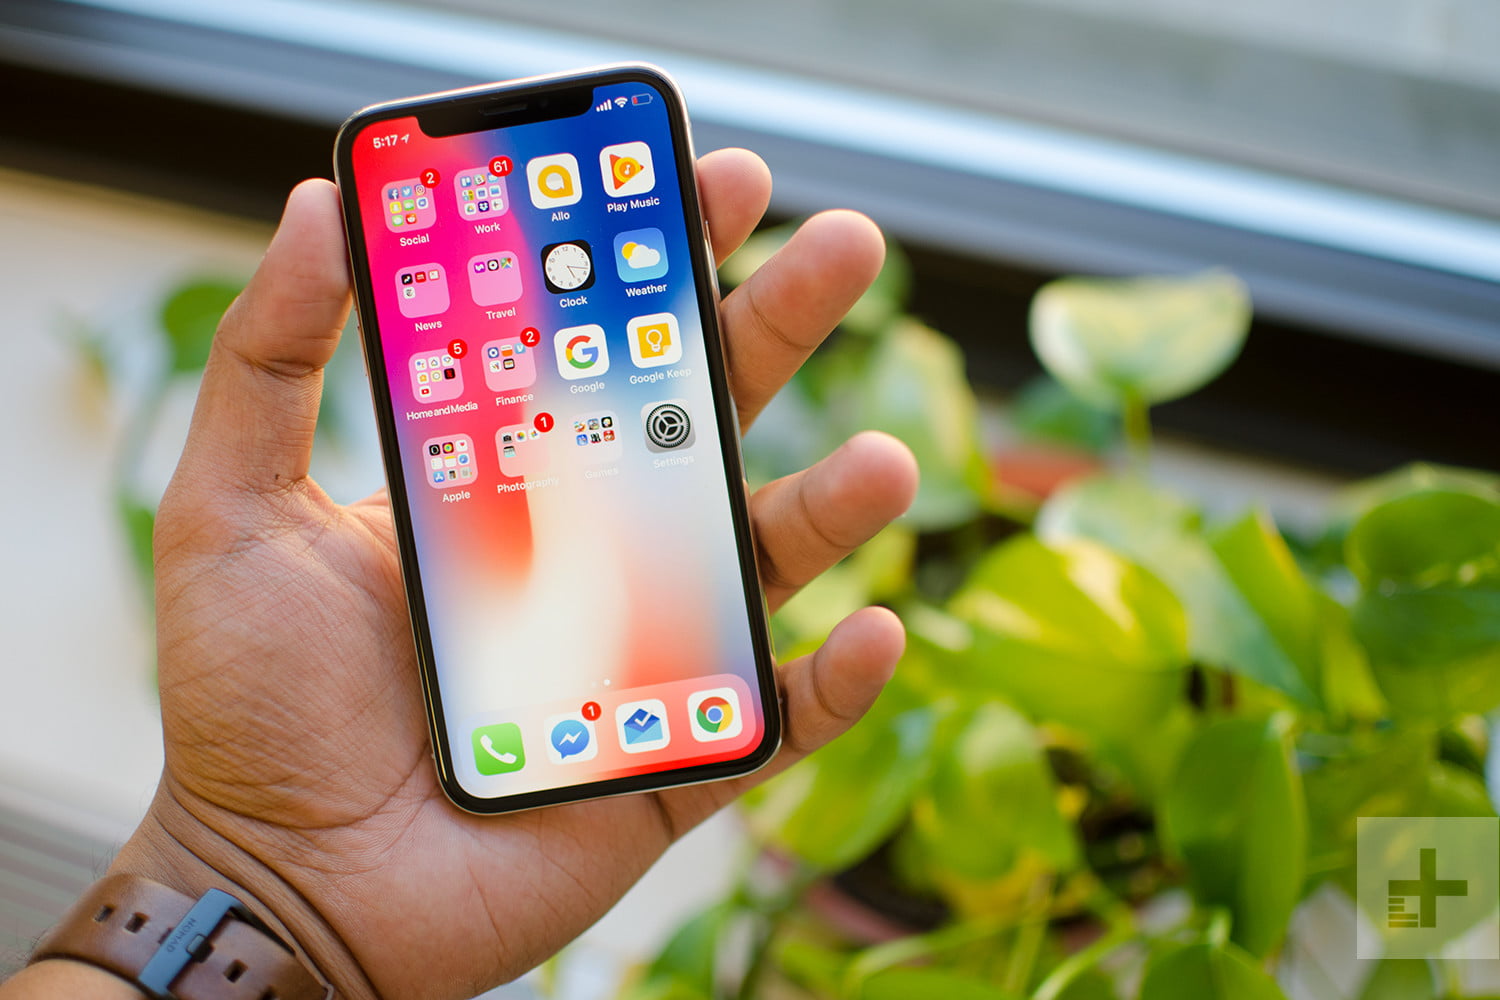 iPhone X soll meistverkaufte Smartphone in Q1 2018 sein